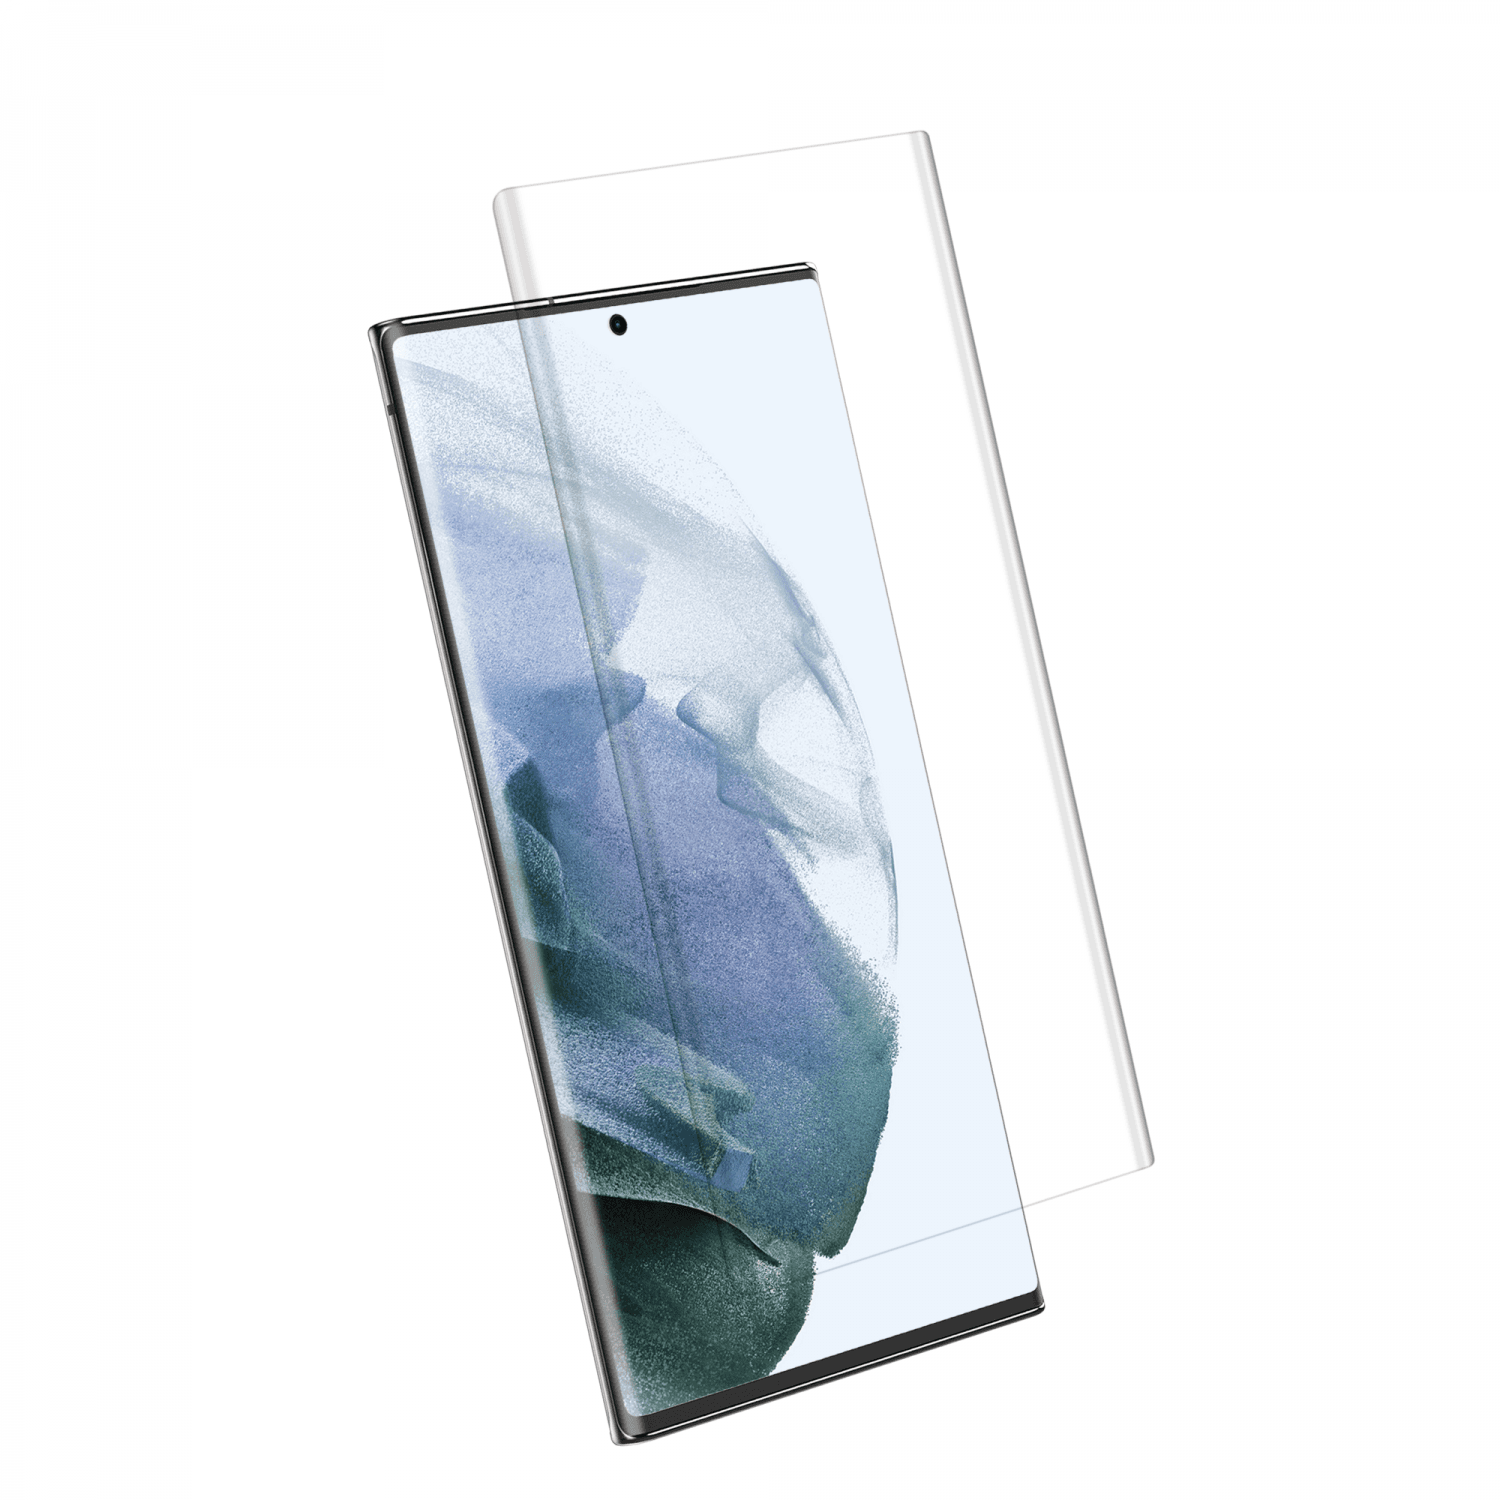 لاصقة حماية الشاشة لموبايل سامسونغ جالاكسي اس 22 زجاجية جرين Green 3D Curved Round Edged Glass Screen Protector for Samsung Galaxy S22 Clear - cG9zdDoxMzgwODAw